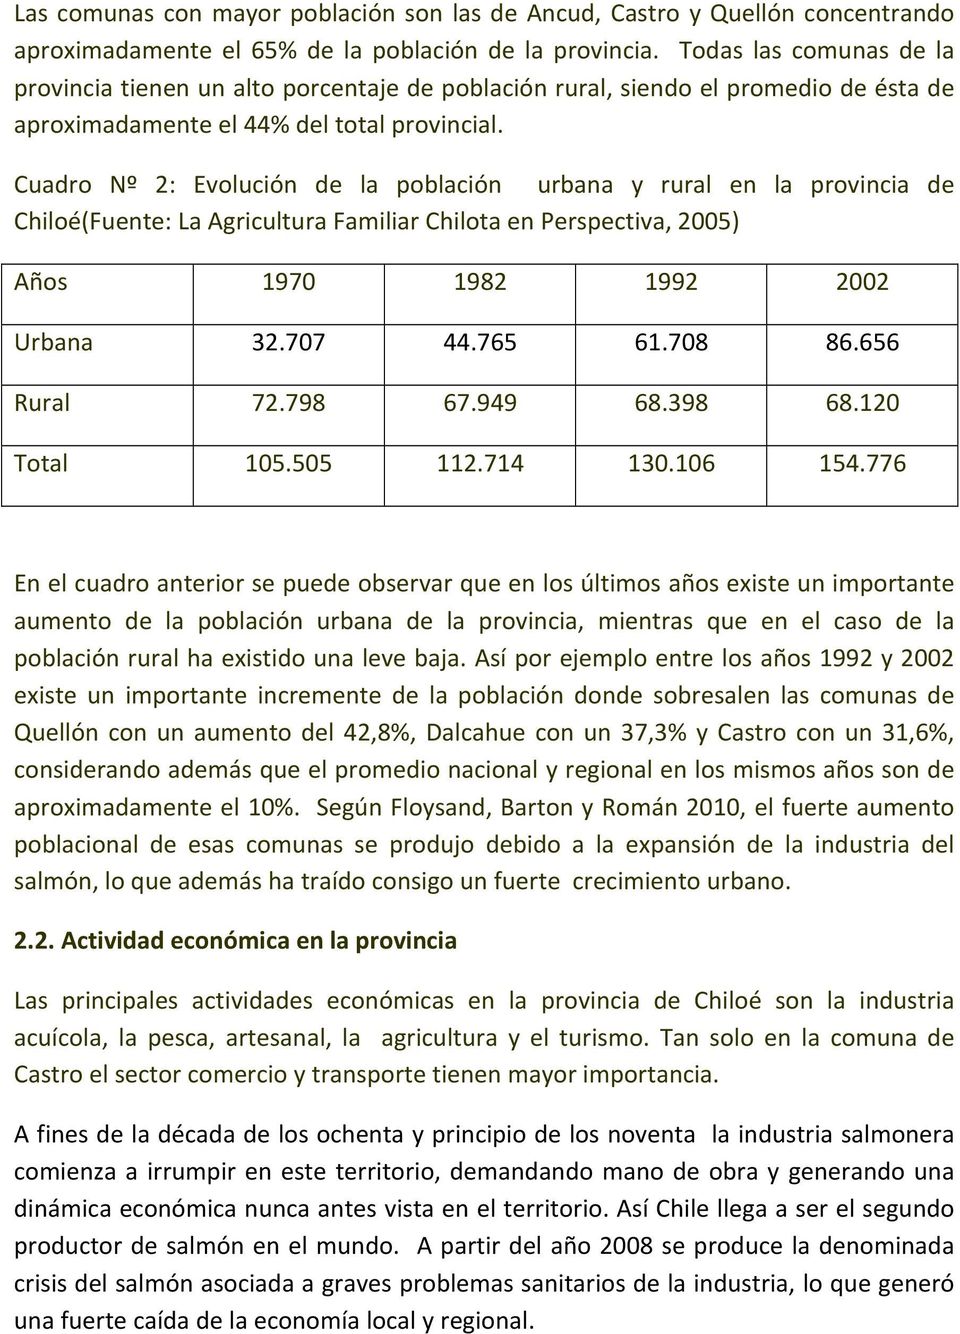 Cuadro Nº 2: Evolución de la población urbana y rural en la provincia de Chiloé(Fuente: La Agricultura Familiar Chilota en Perspectiva, 2005) Años 1970 1982 1992 2002 Urbana 32.707 44.765 61.708 86.